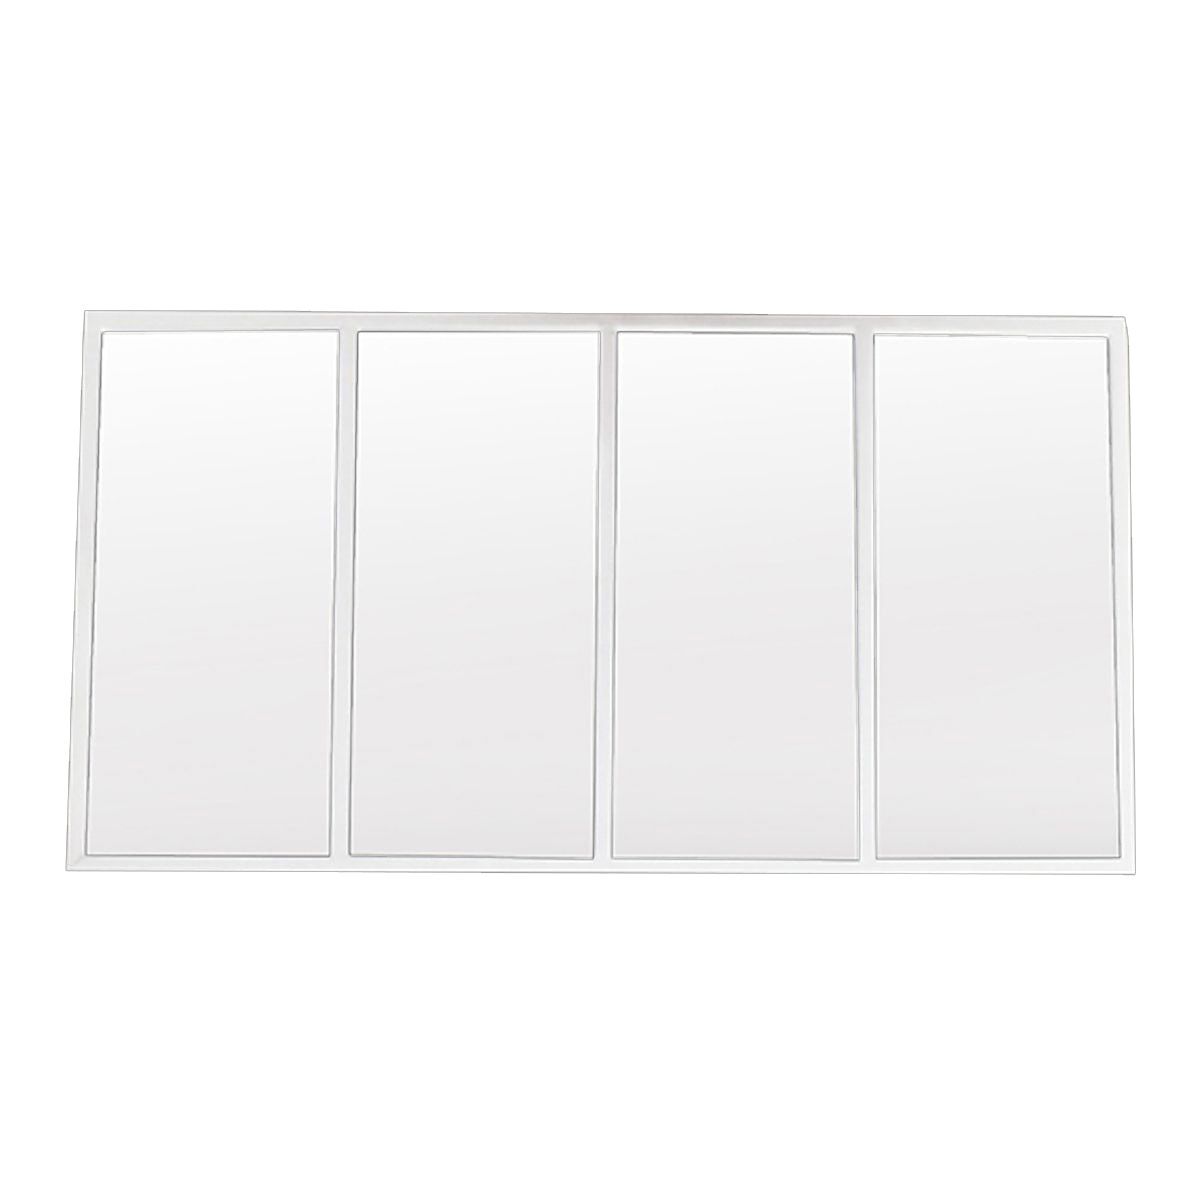 Decoclico Factory Miroir verrière atelier rectangulaire en métal blanc 140 x 75 cm